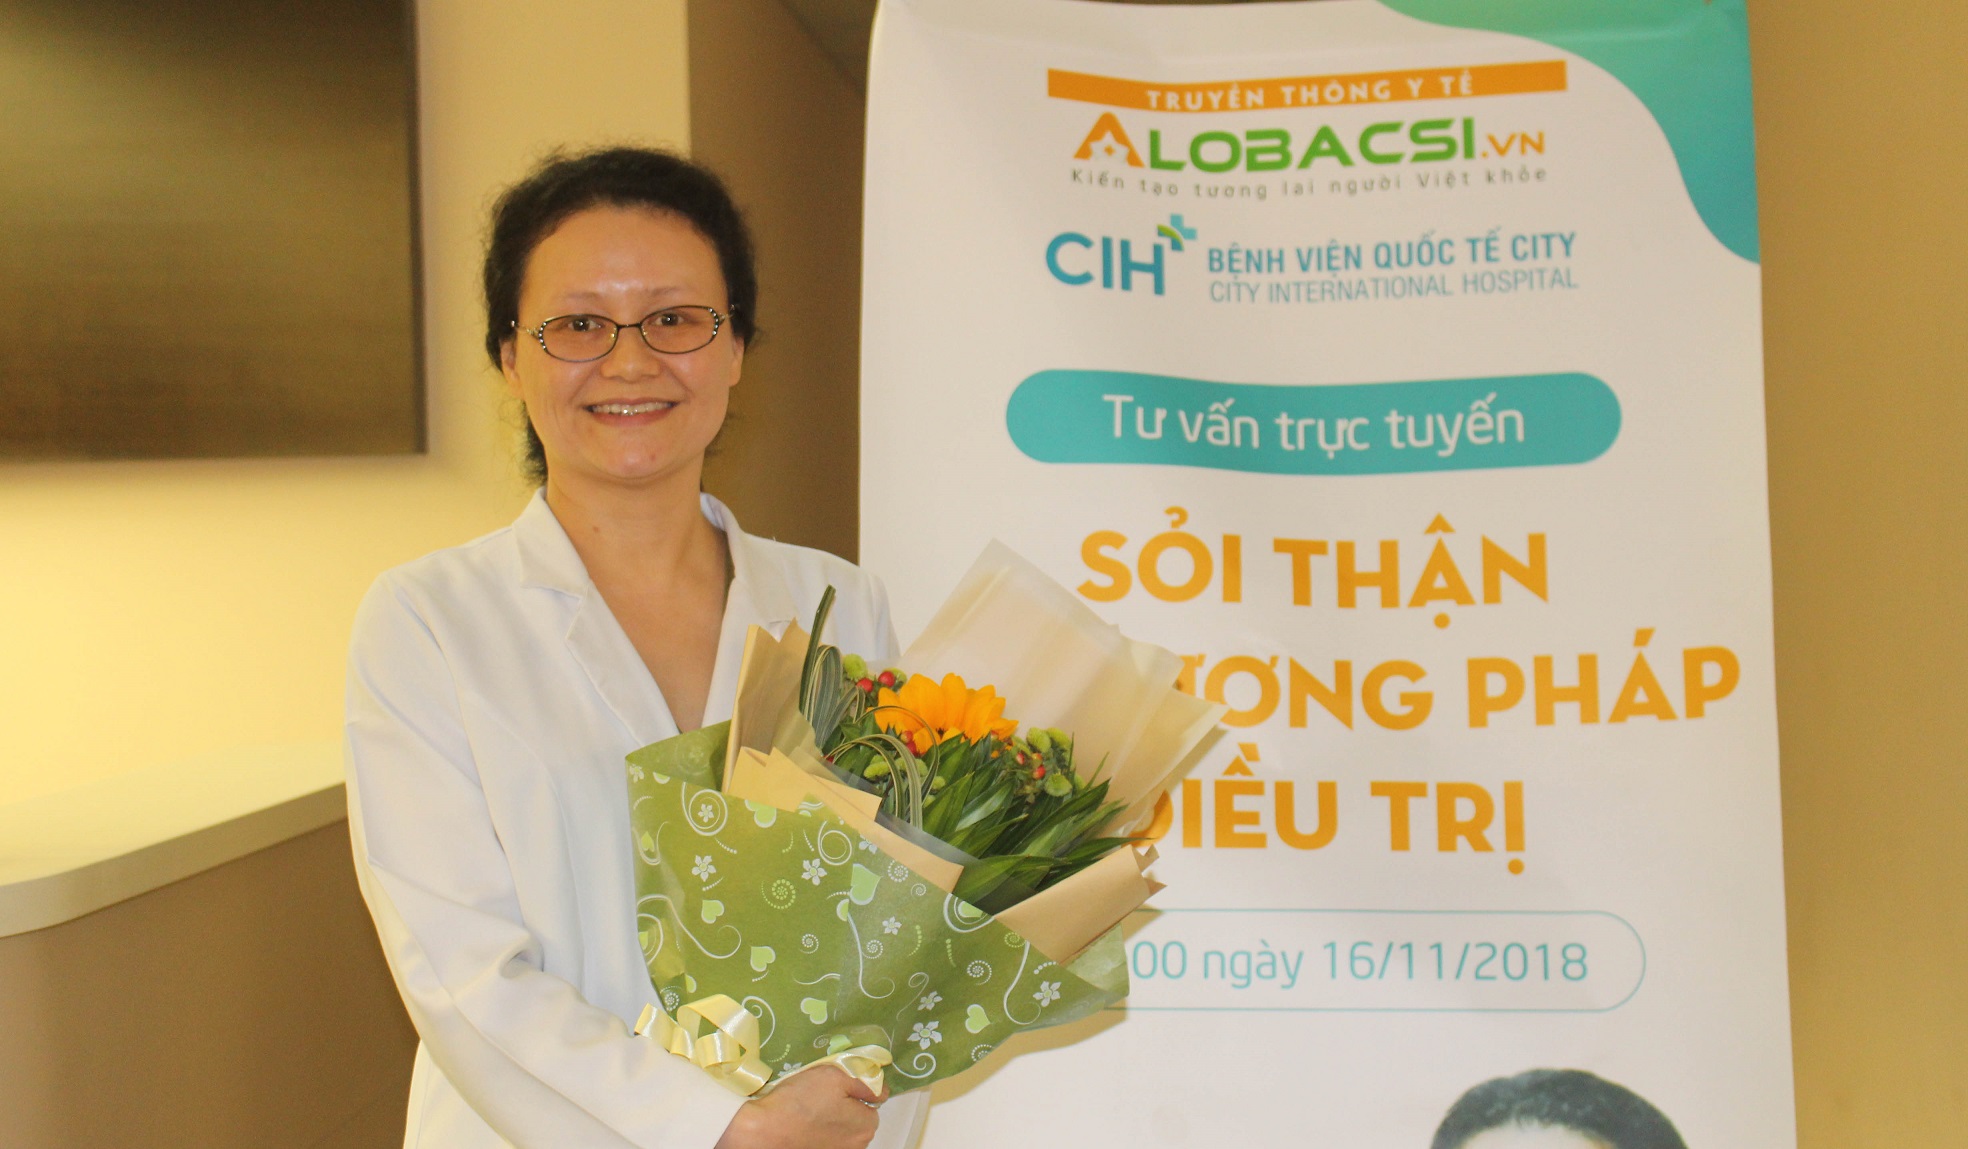 Bác sĩ tiết niệu giỏi ở Sài Gòn-Bác sĩ Chuyên khoa I Nguyễn Thị Thái Hà | Nguồn: Bệnh viện Quốc tế City